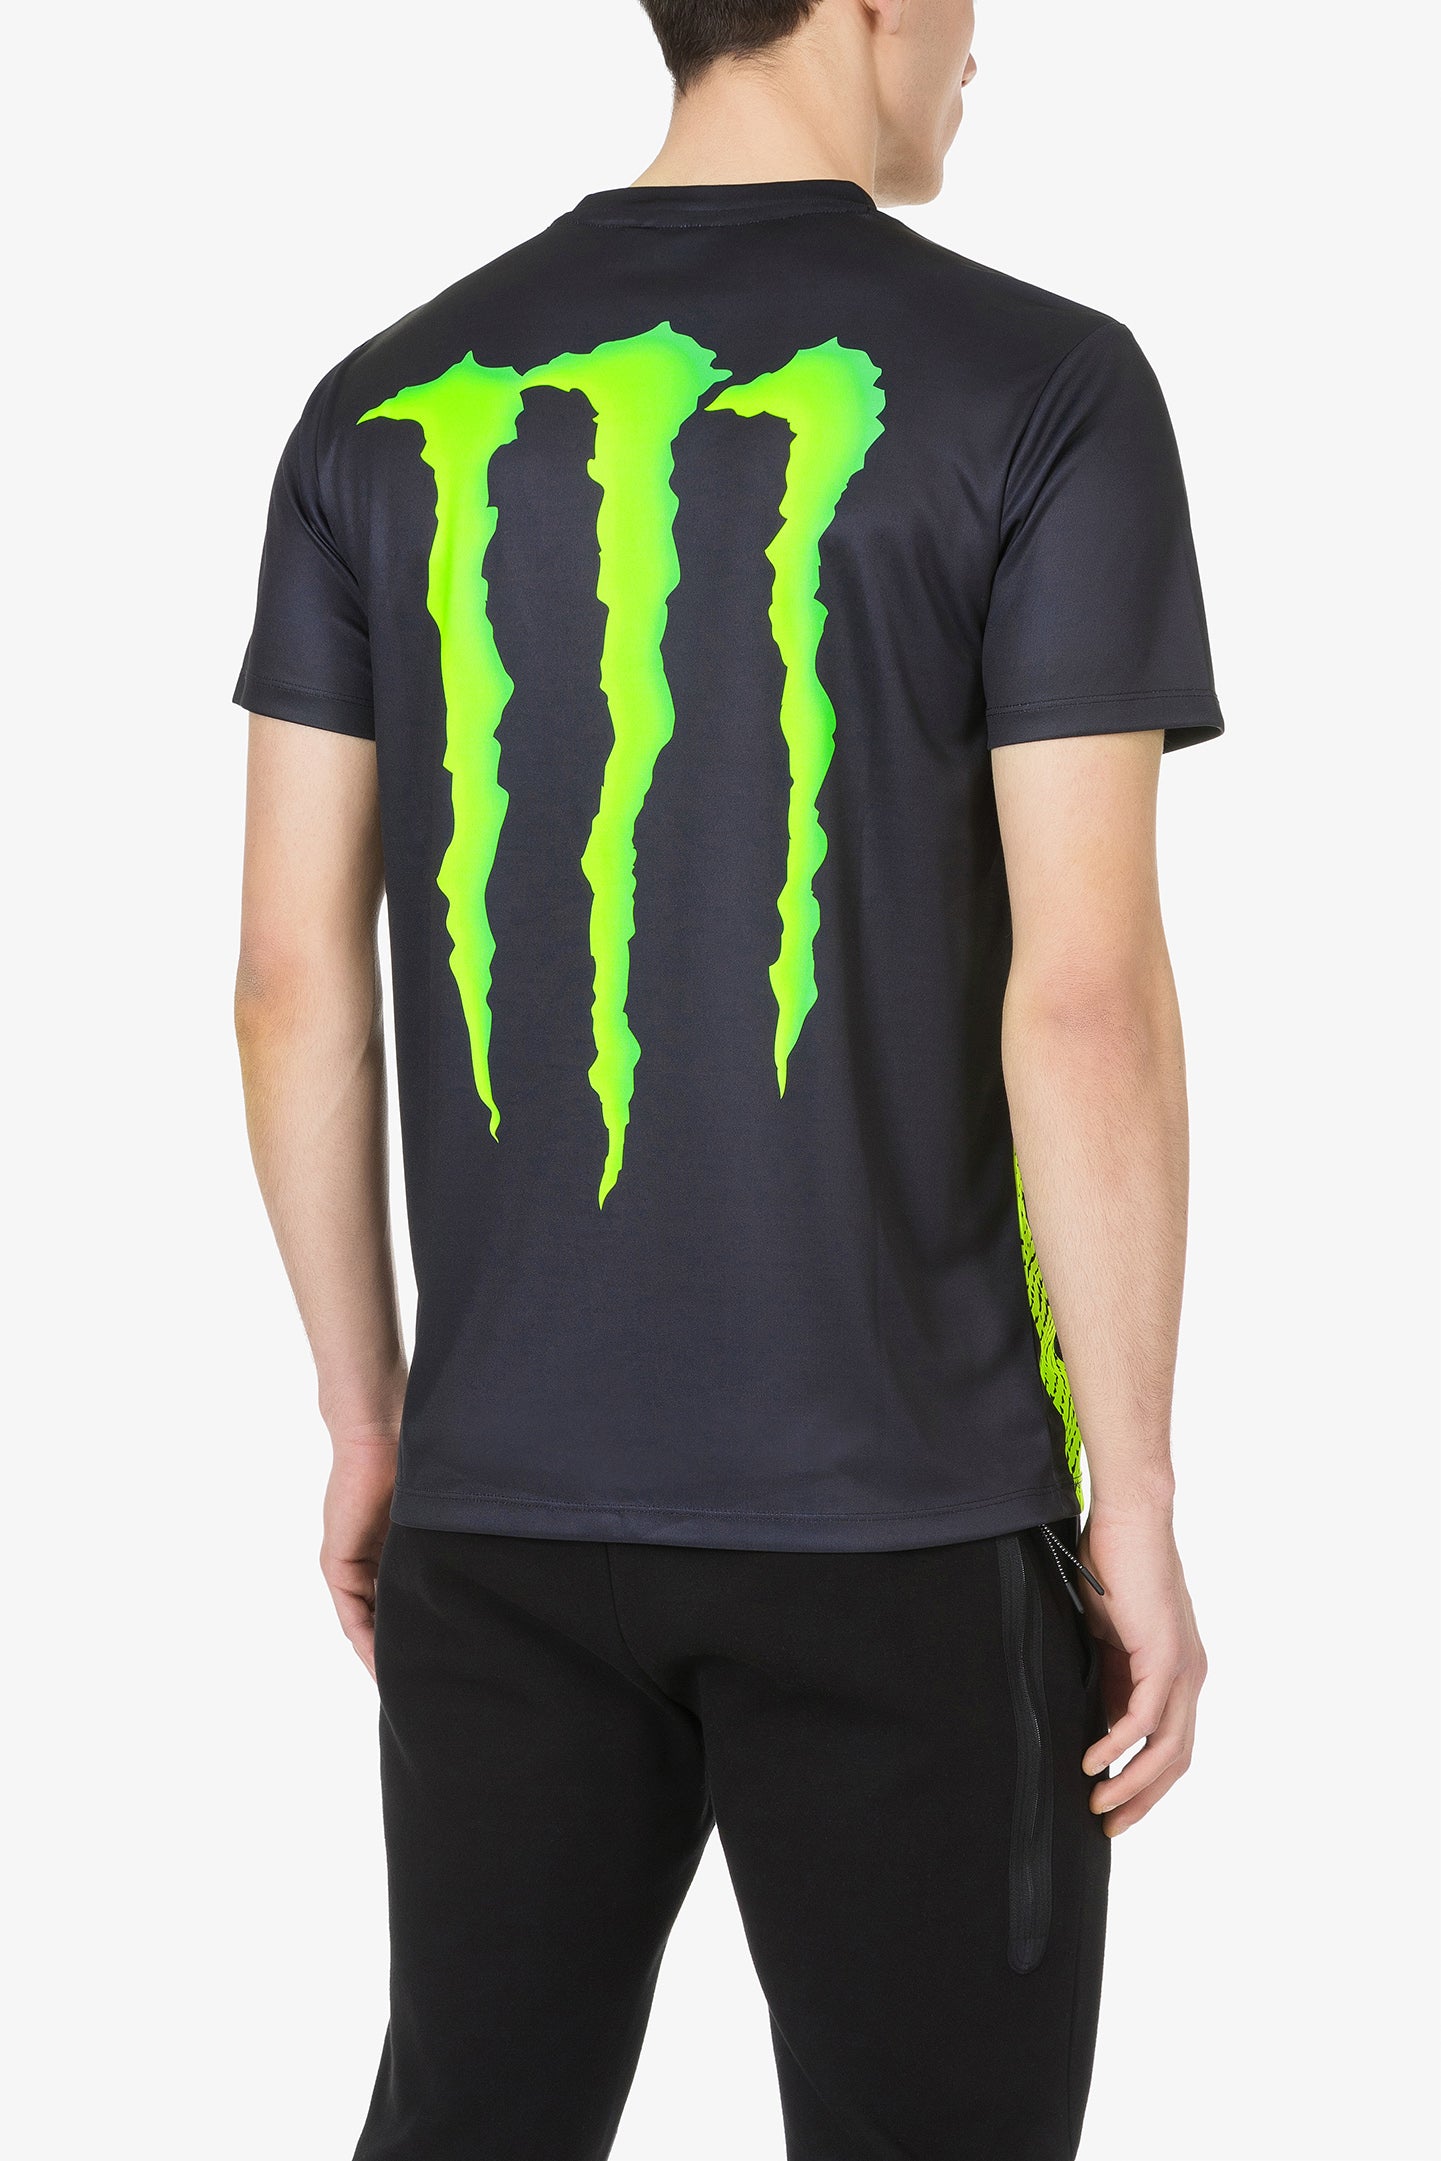 afskaffe Vej At deaktivere 46 Monster Energy t-shirt